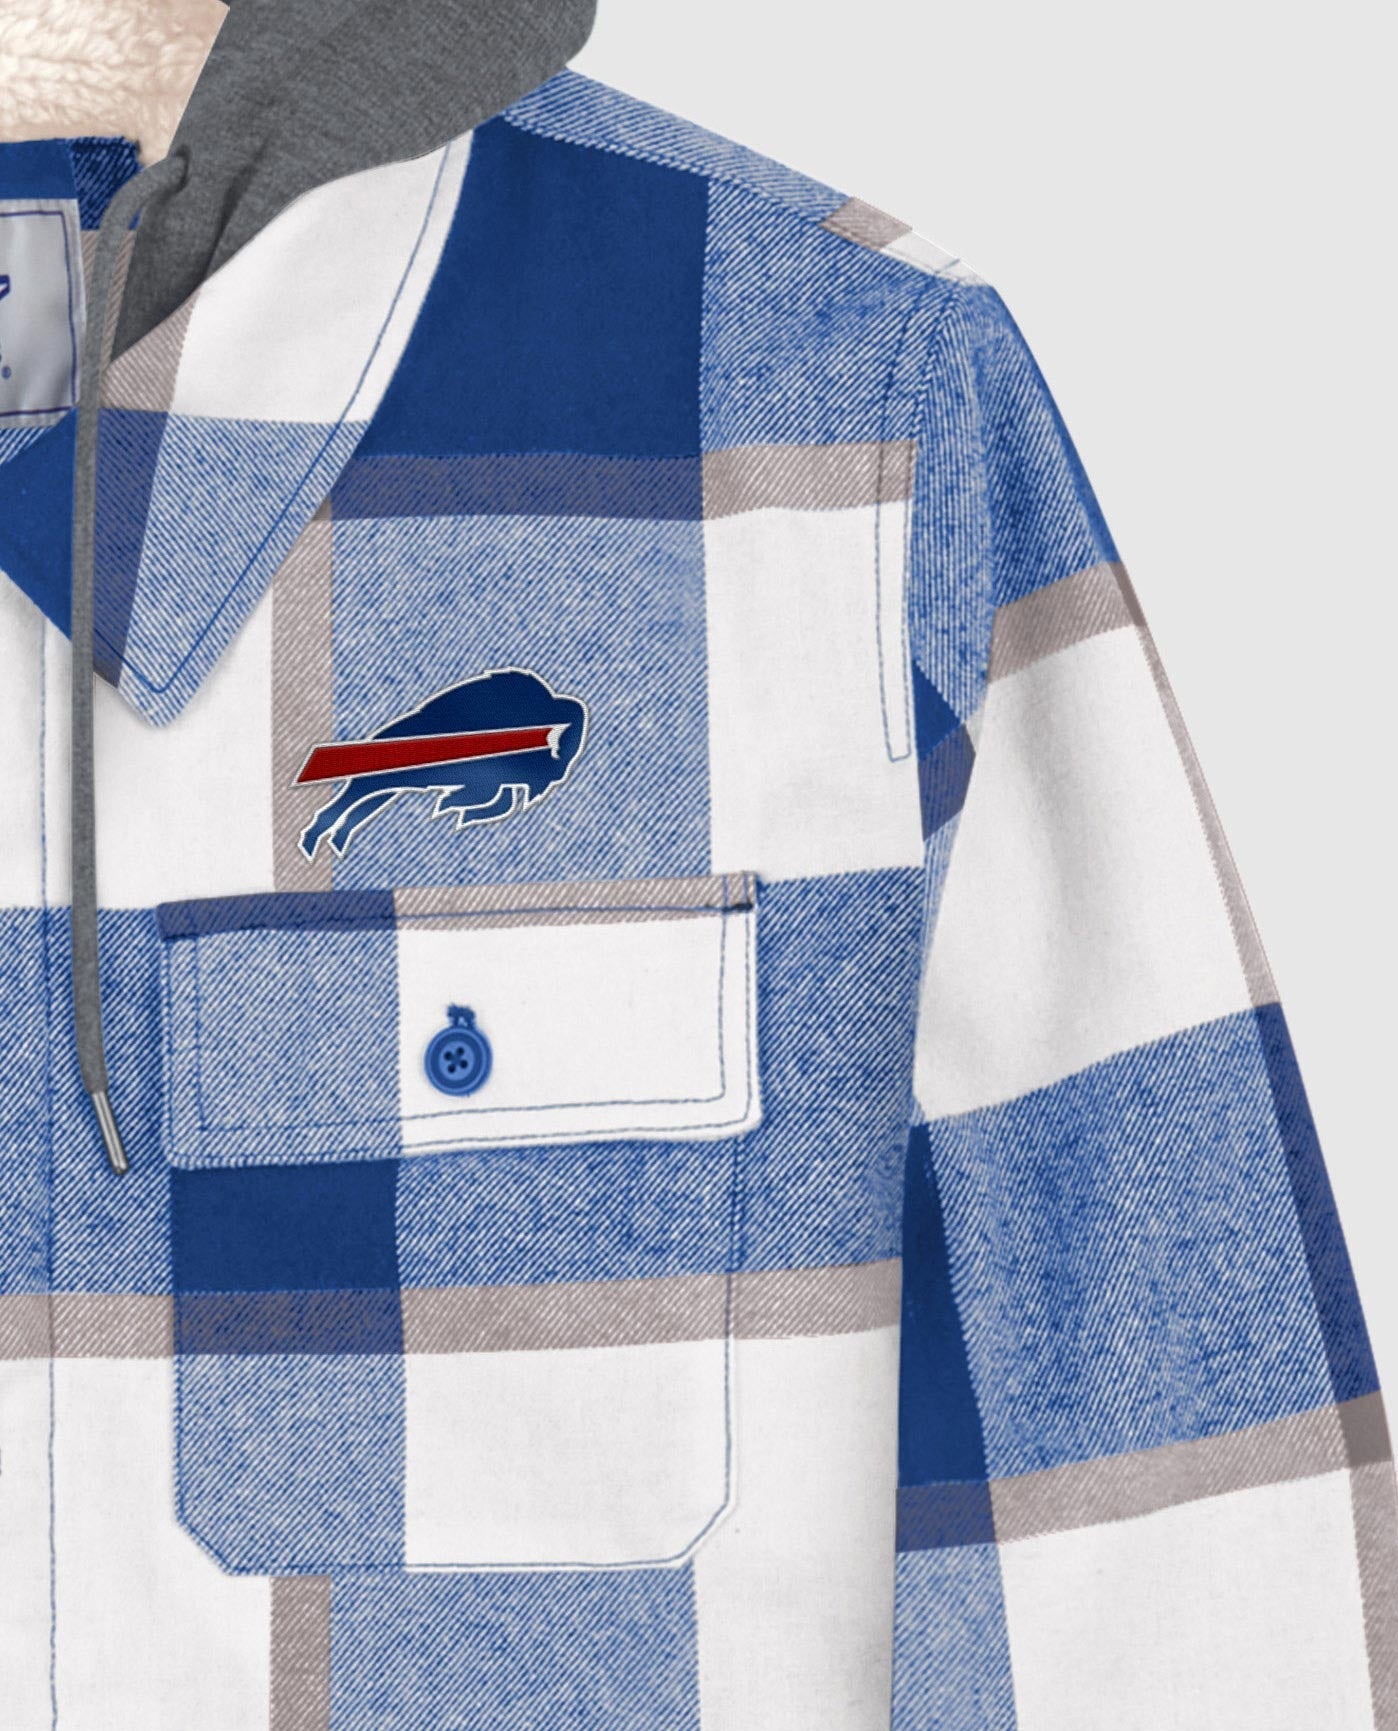 Buffalo Bills Twill Applique Logo Above Left Pocket | Bills Blue